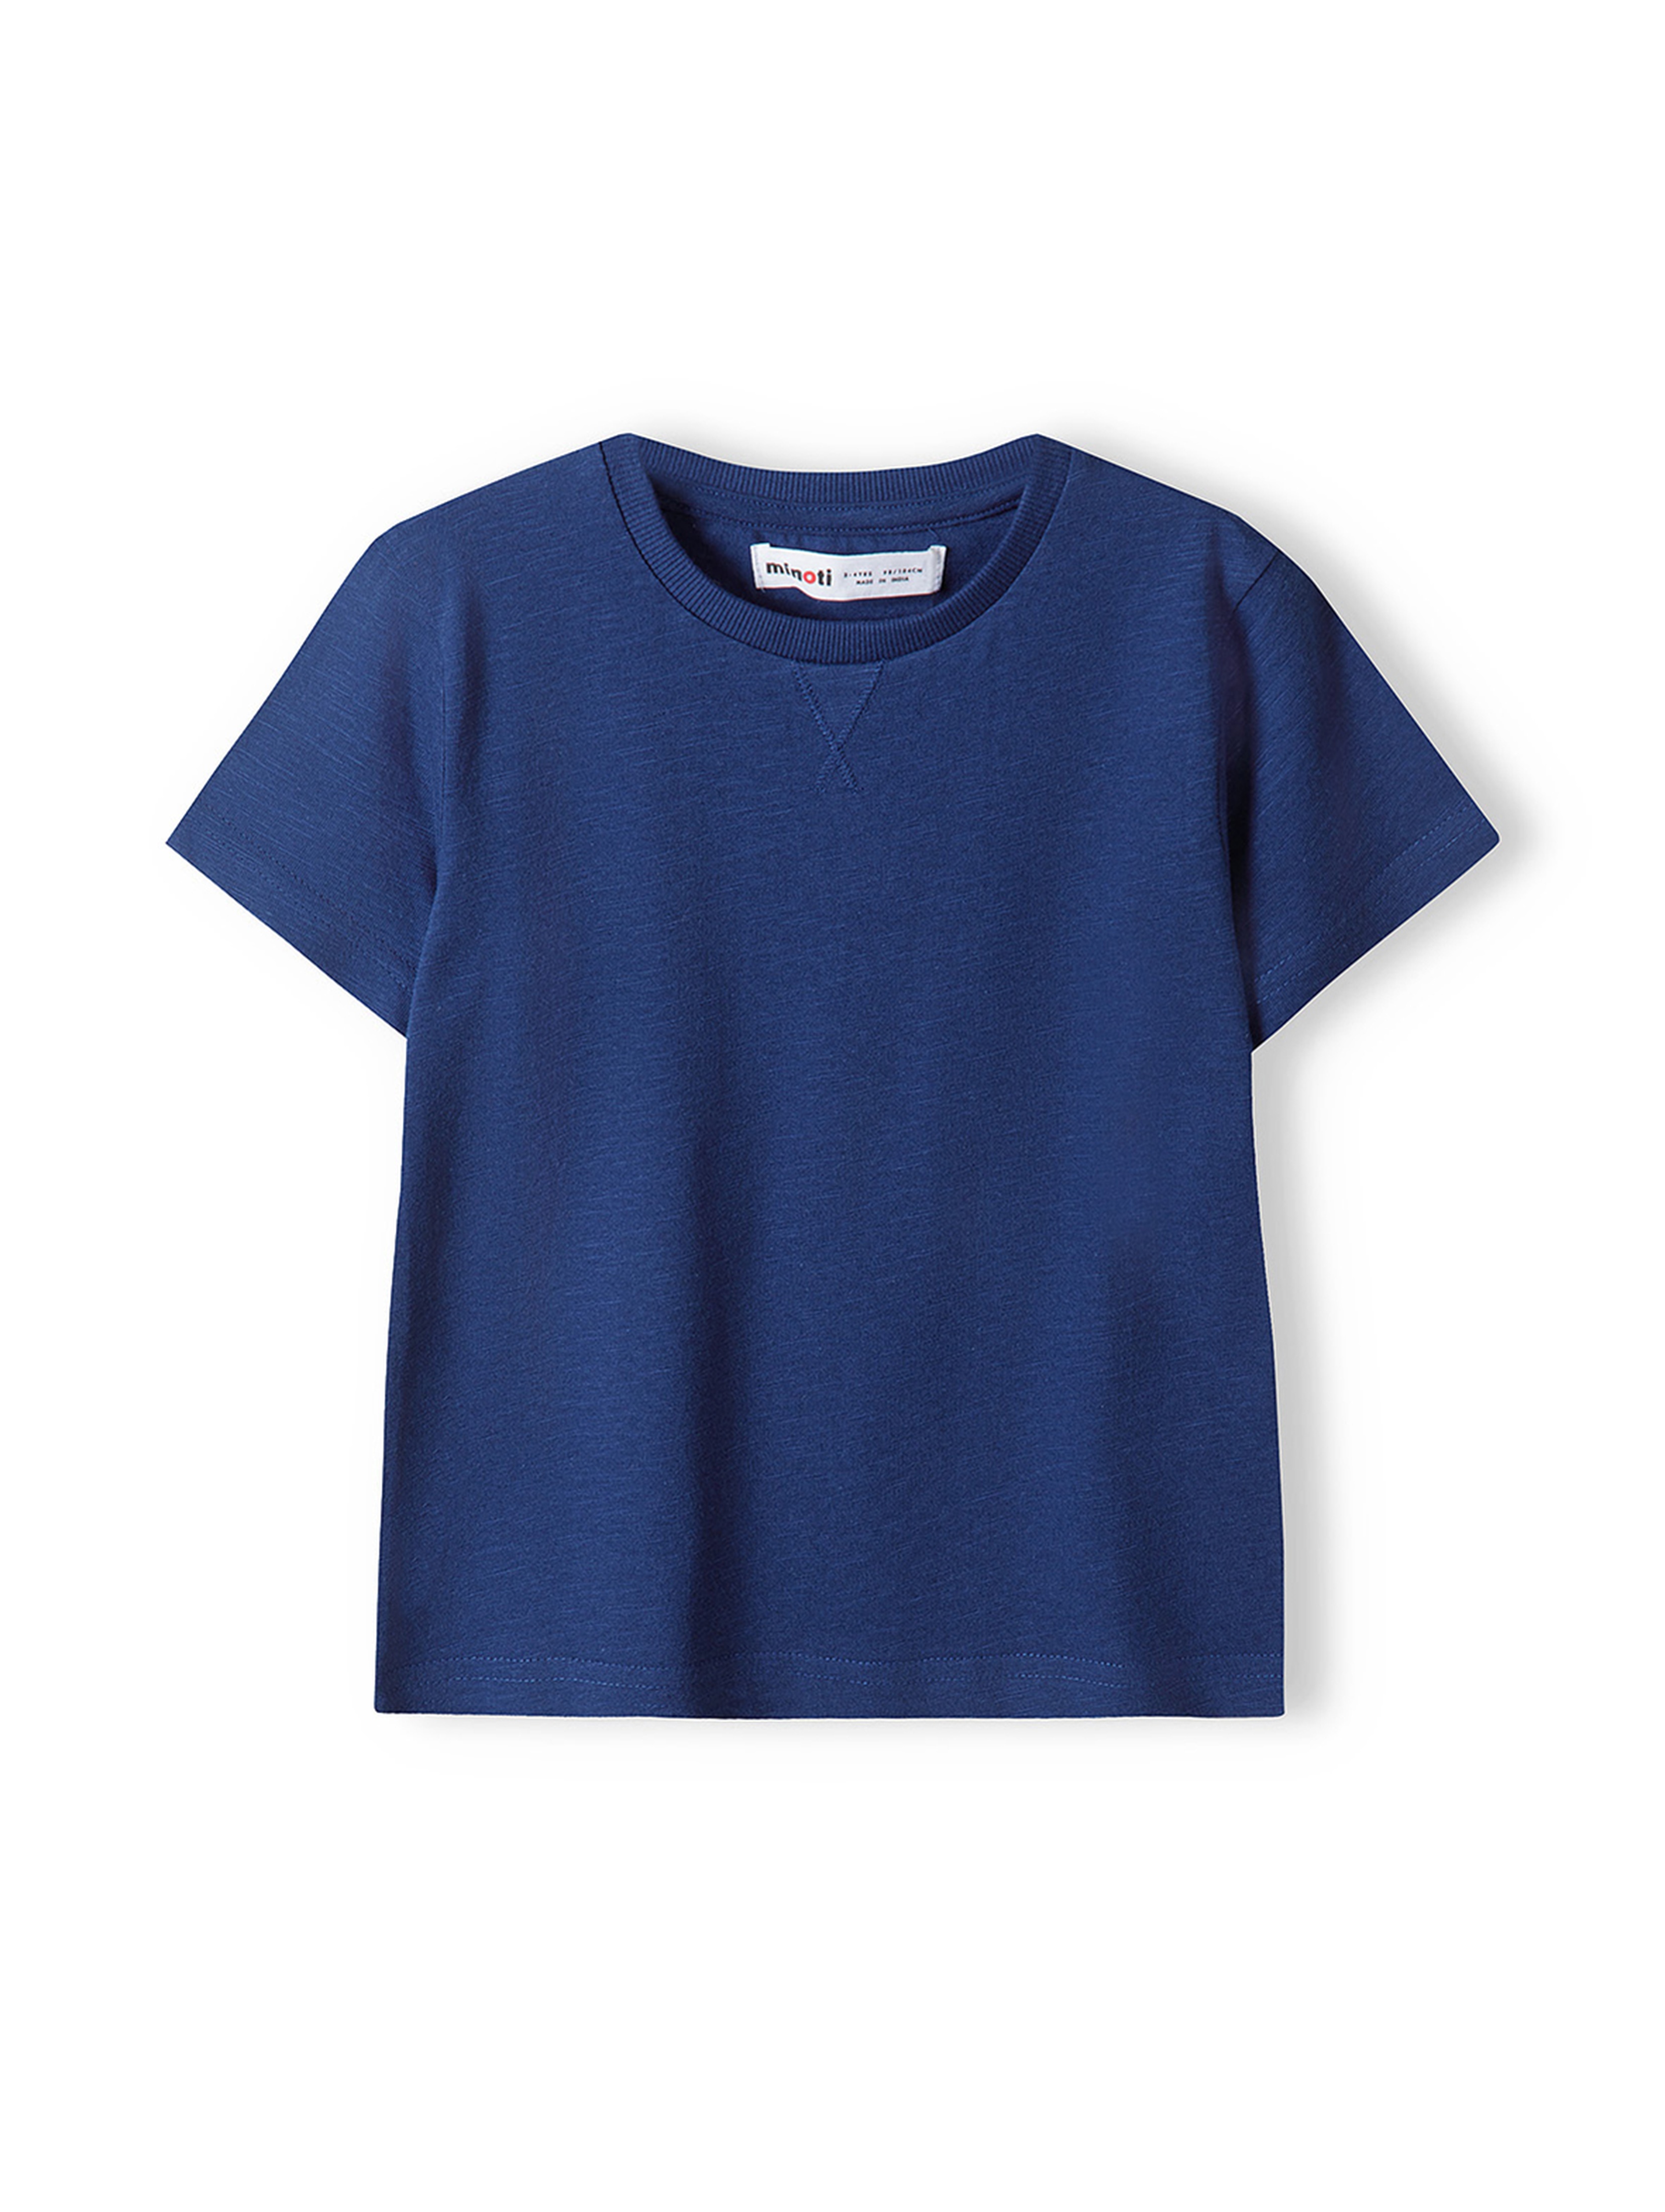 Niebieska koszulka bawełniana dla chłopca